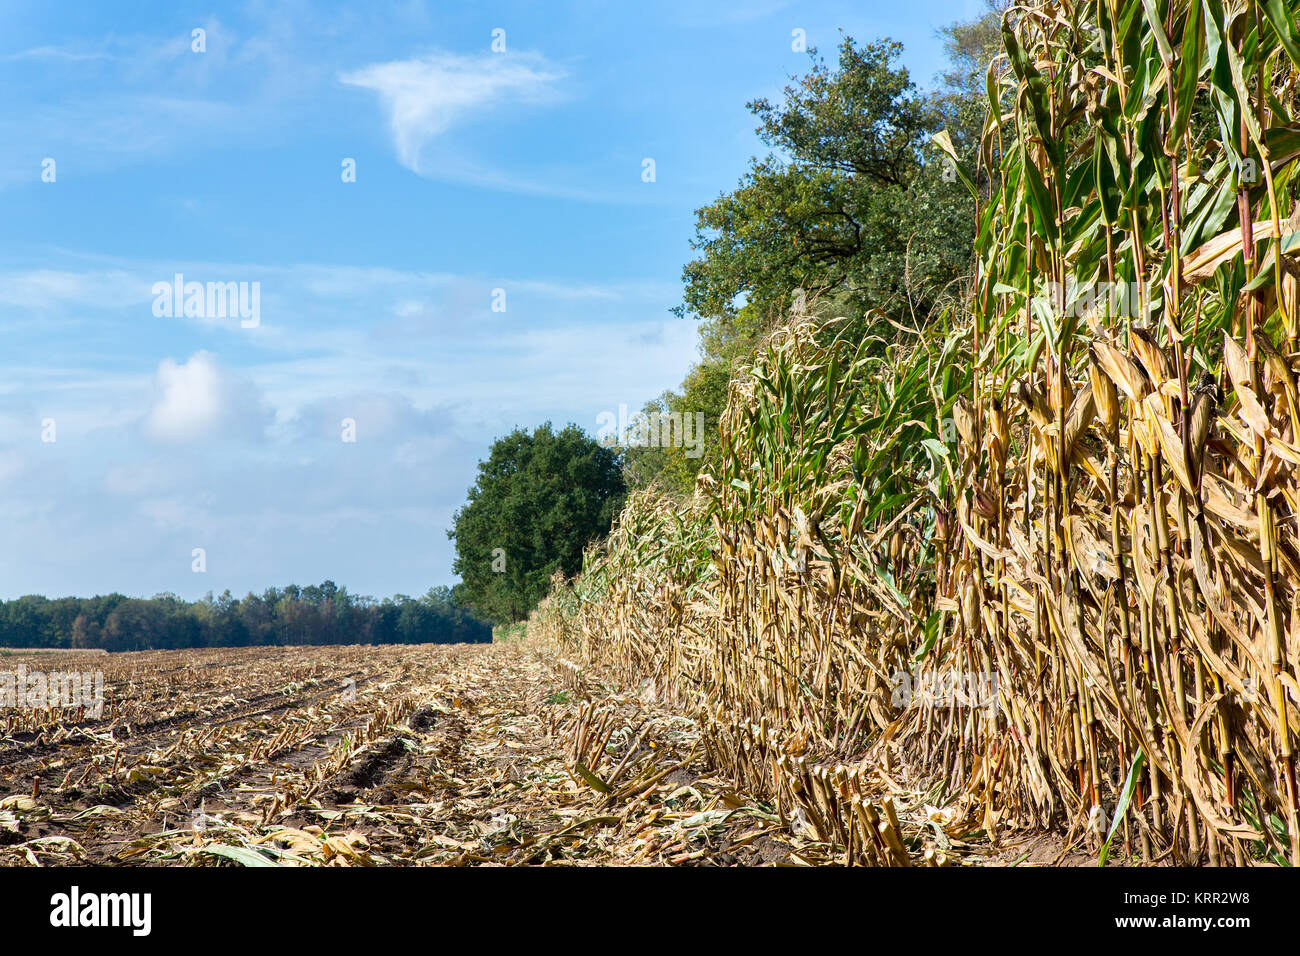 Feld mit Mais Stoppeln und Pflanzen im Herbst Saison Stockfoto